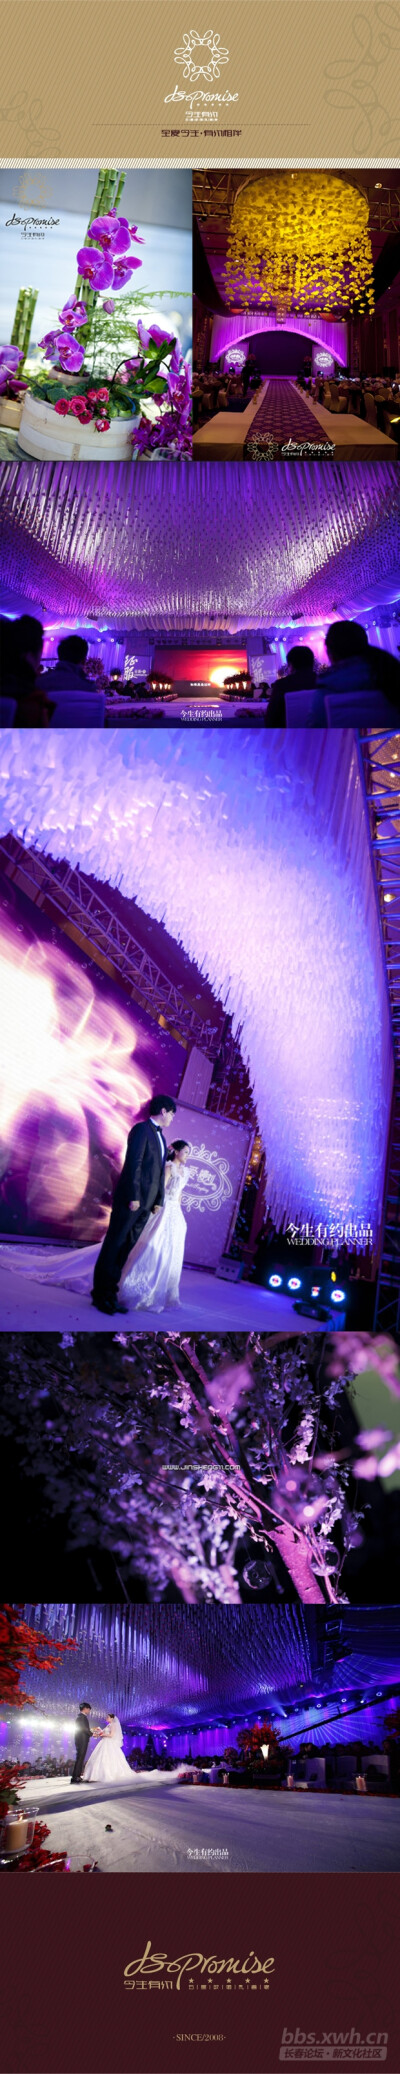 紫色，高贵浪漫，梦幻的婚礼现场，完成你们婚礼的梦想。 美丽的新娘，还在等什么呢？ 长春今生有约出品 官网：www.jinsheng11.com